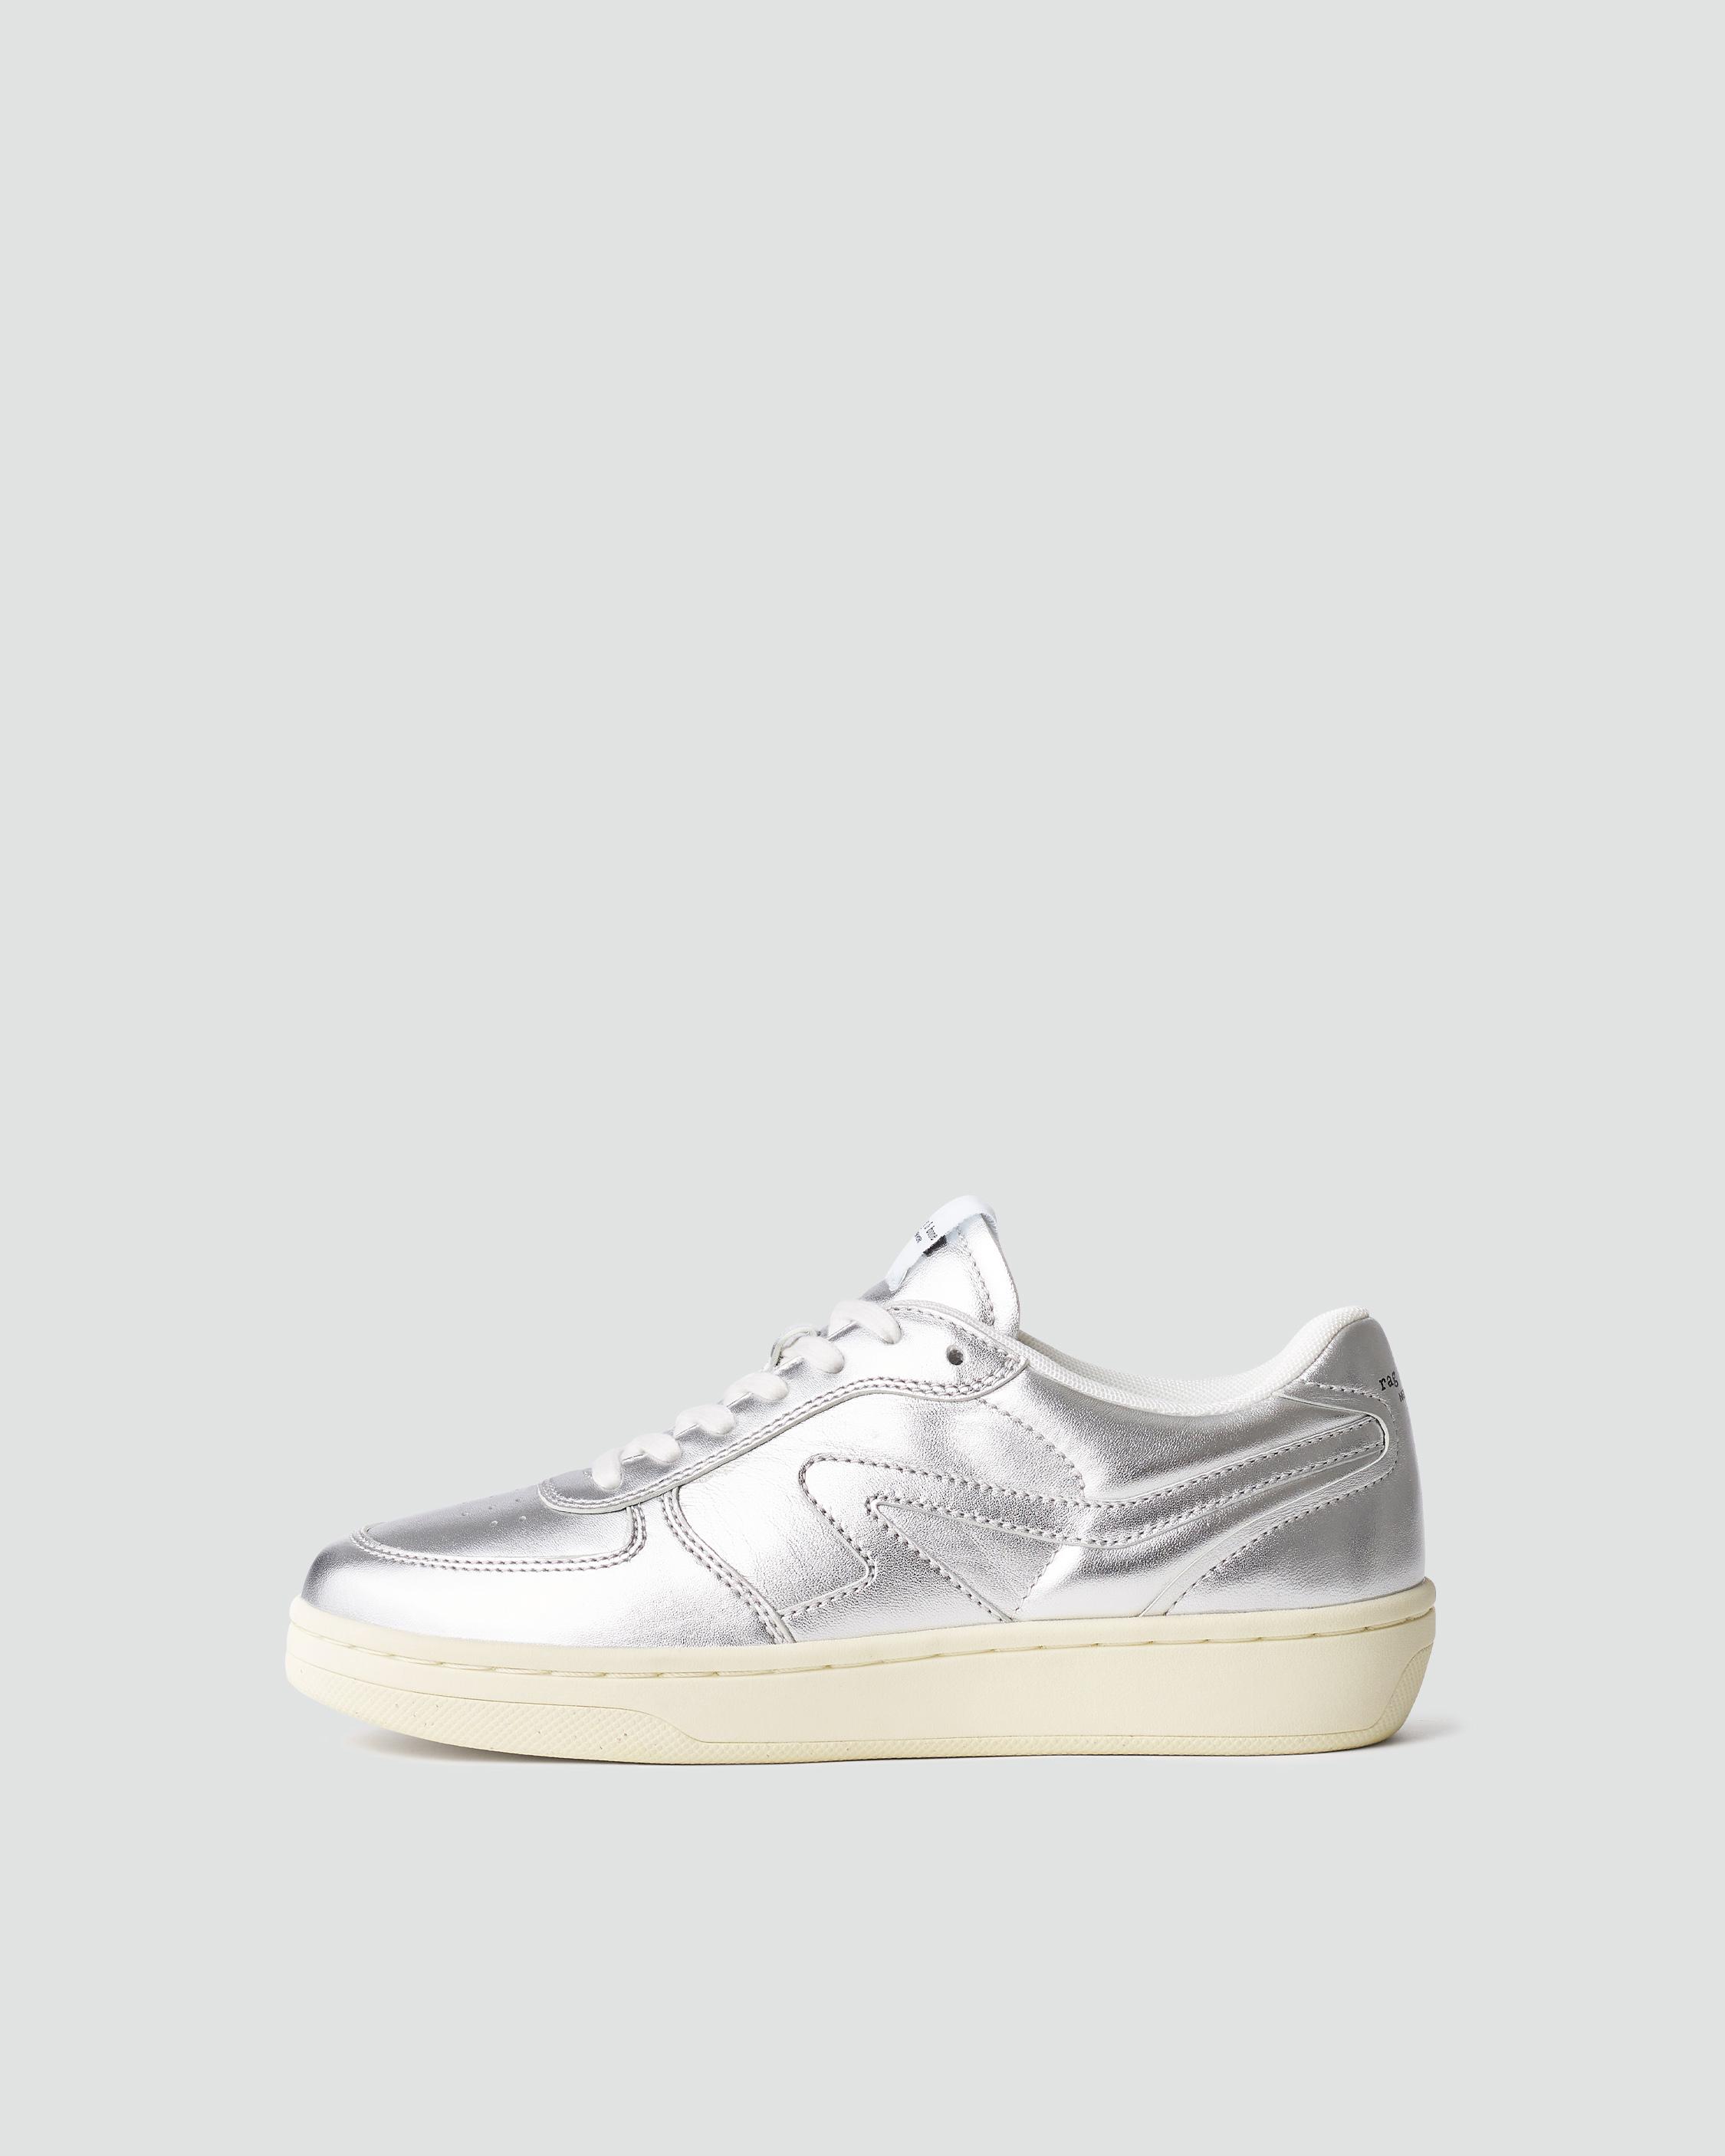 Retro Court rag - | Silver bone Leather - Sneaker 